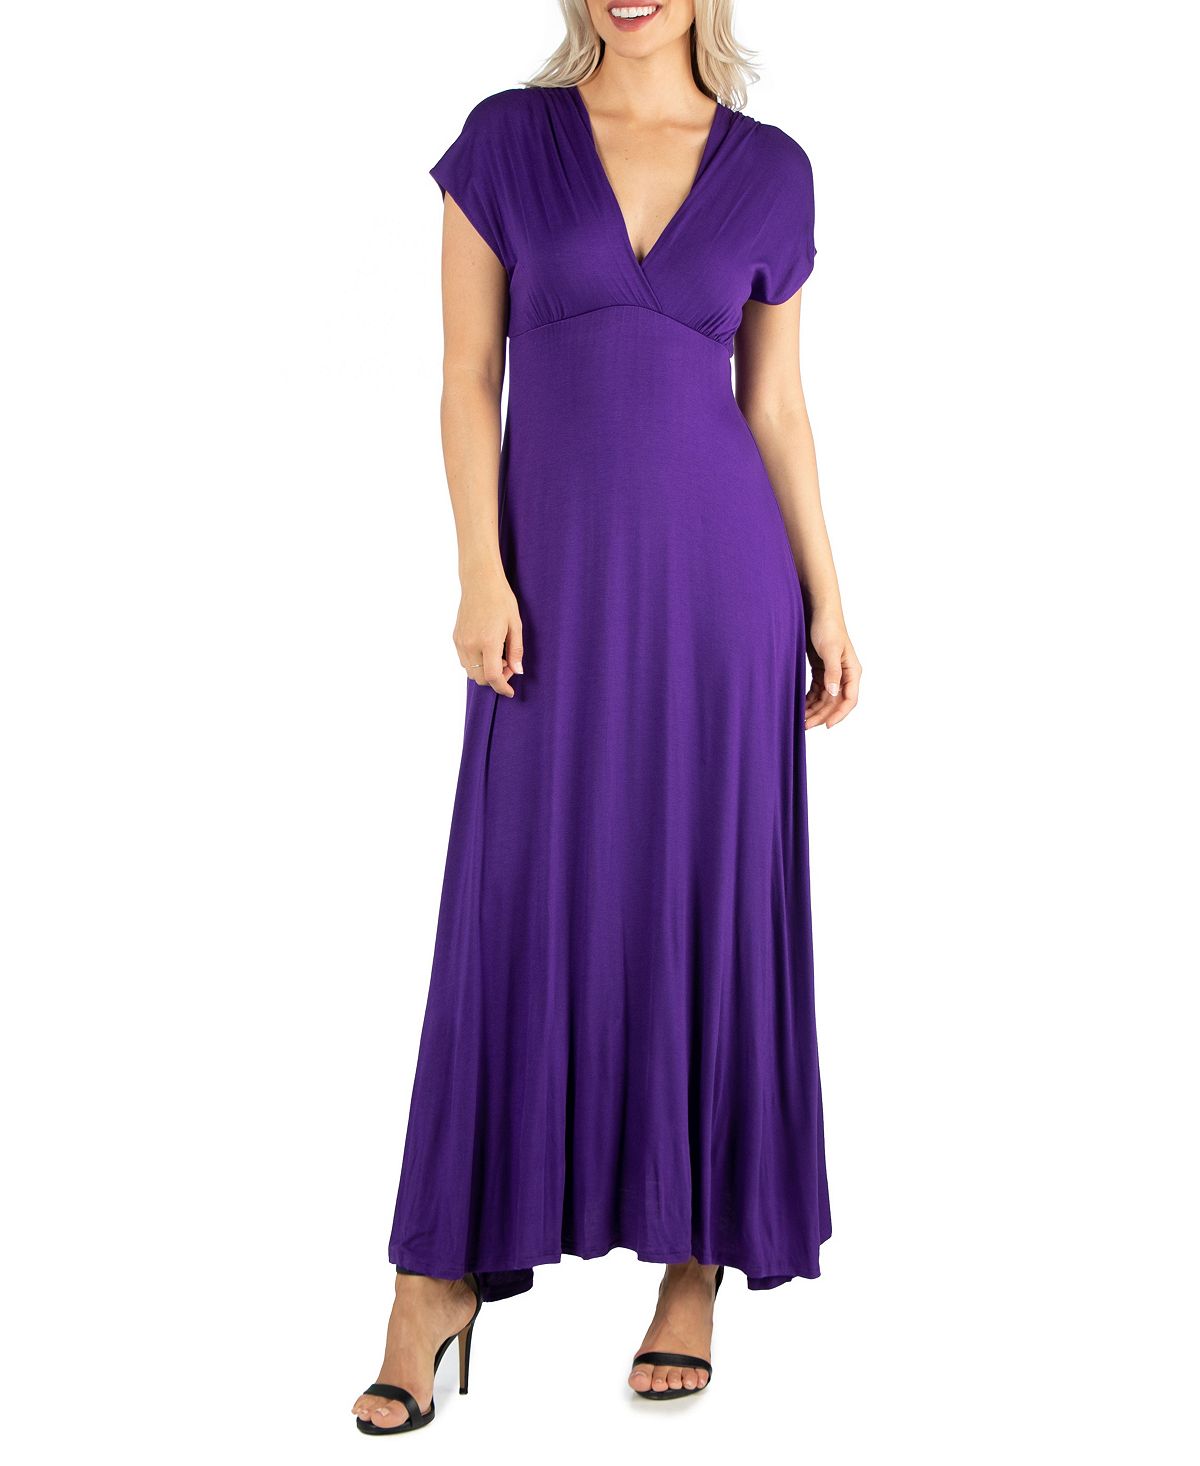 женское вечернее платье с v образным вырезом и юбкой годе Женское макси-платье с короткими рукавами и v-образным вырезом 24seven Comfort Apparel, фиолетовый